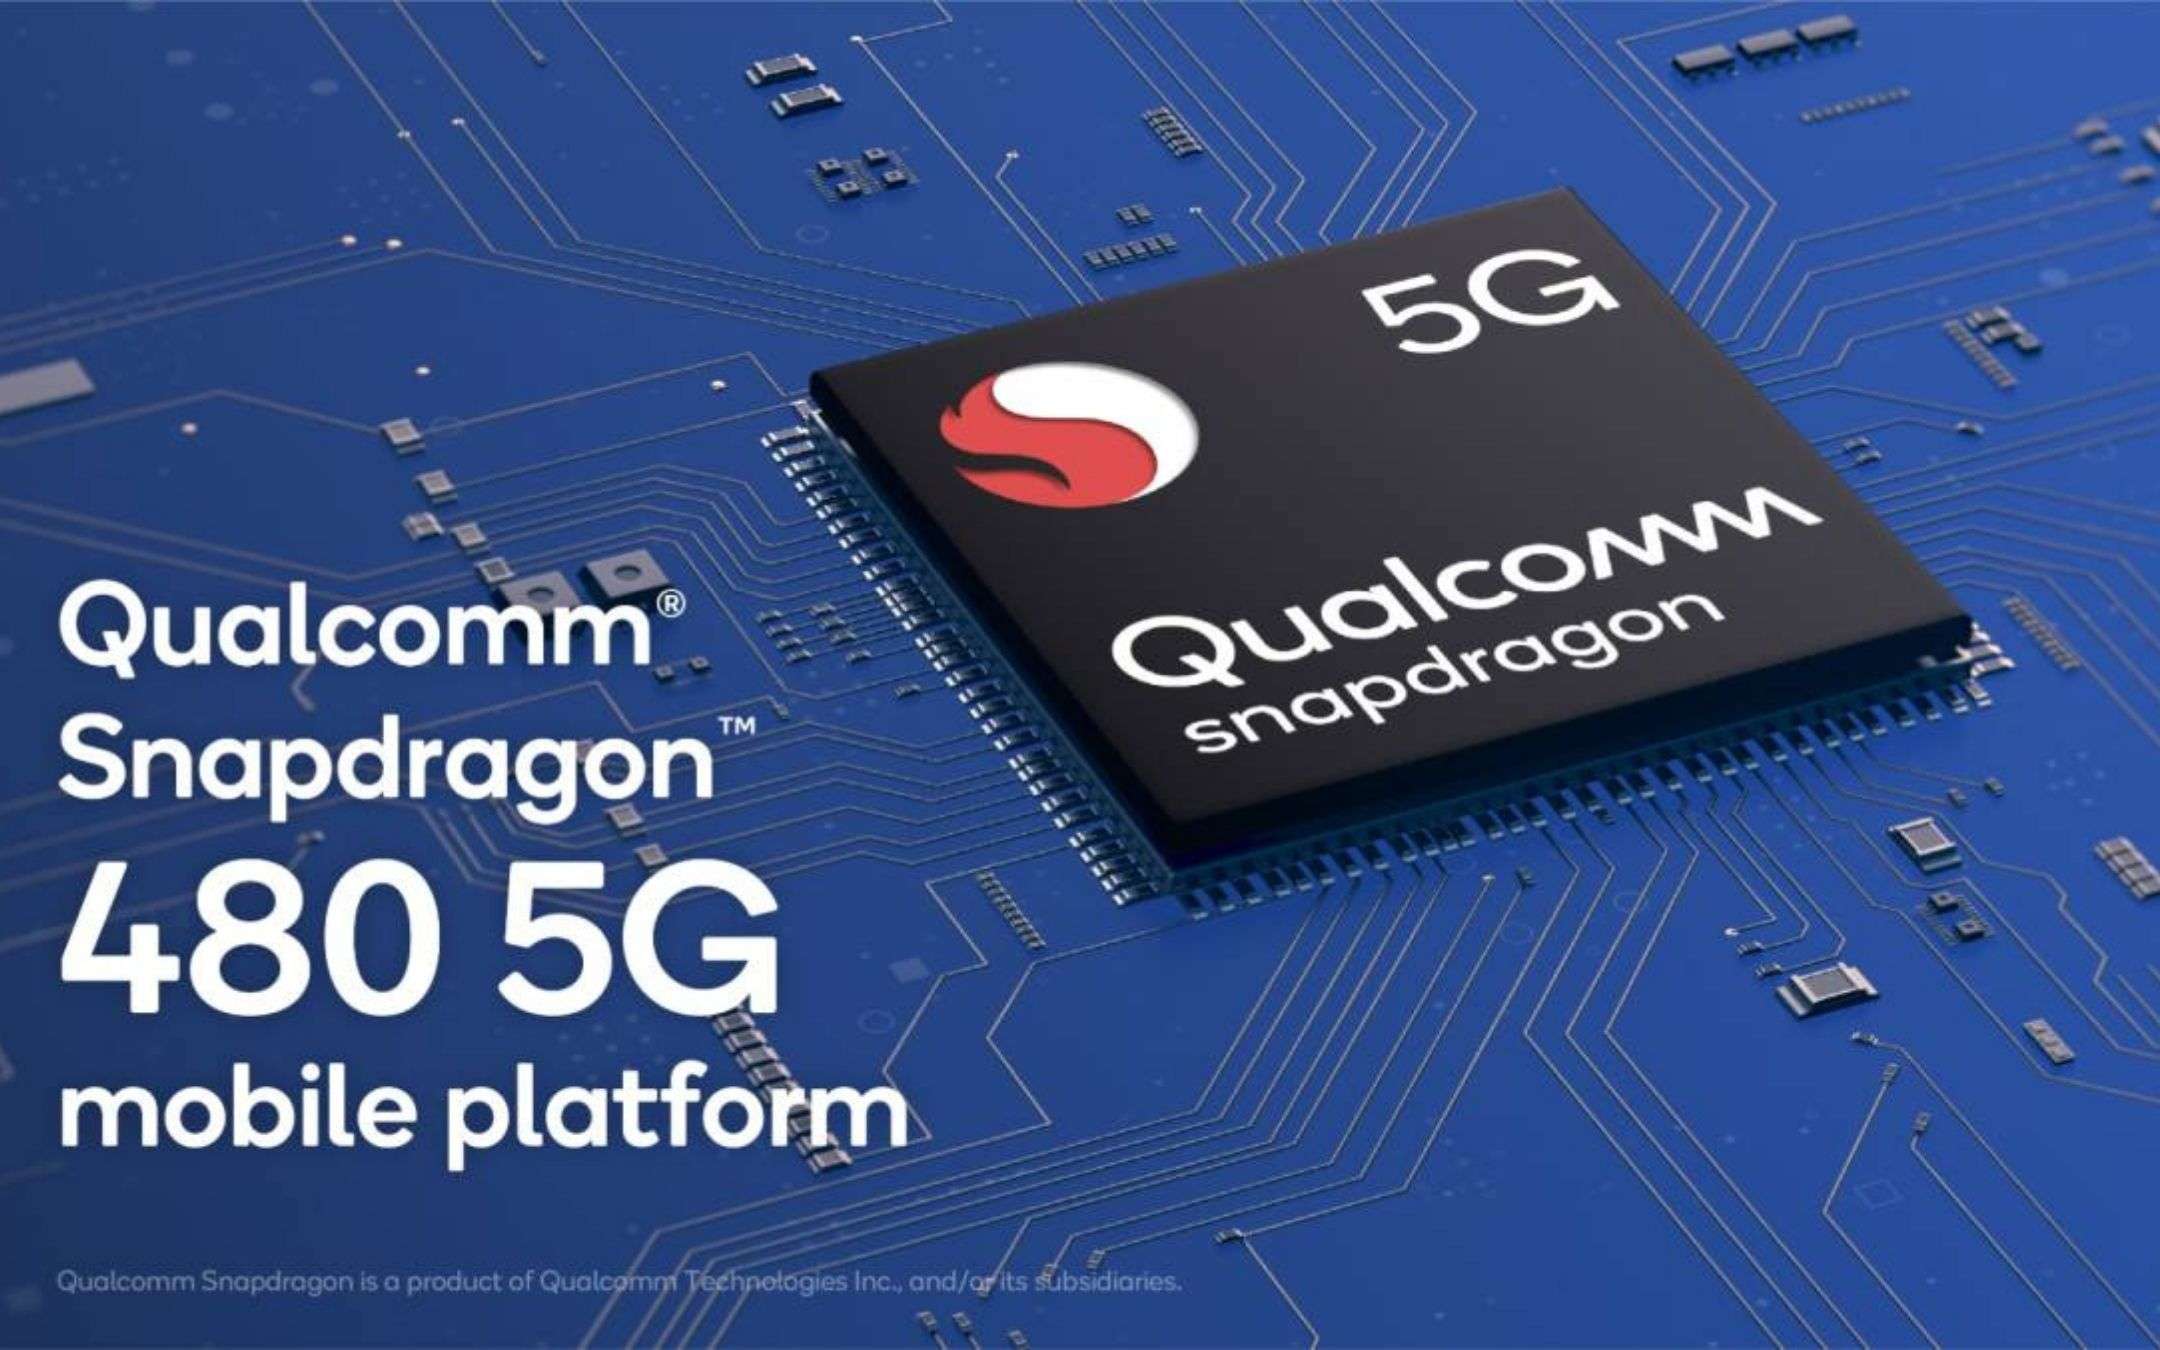 Qualcomm: date il benvenuto allo Snapdragon 480 5G